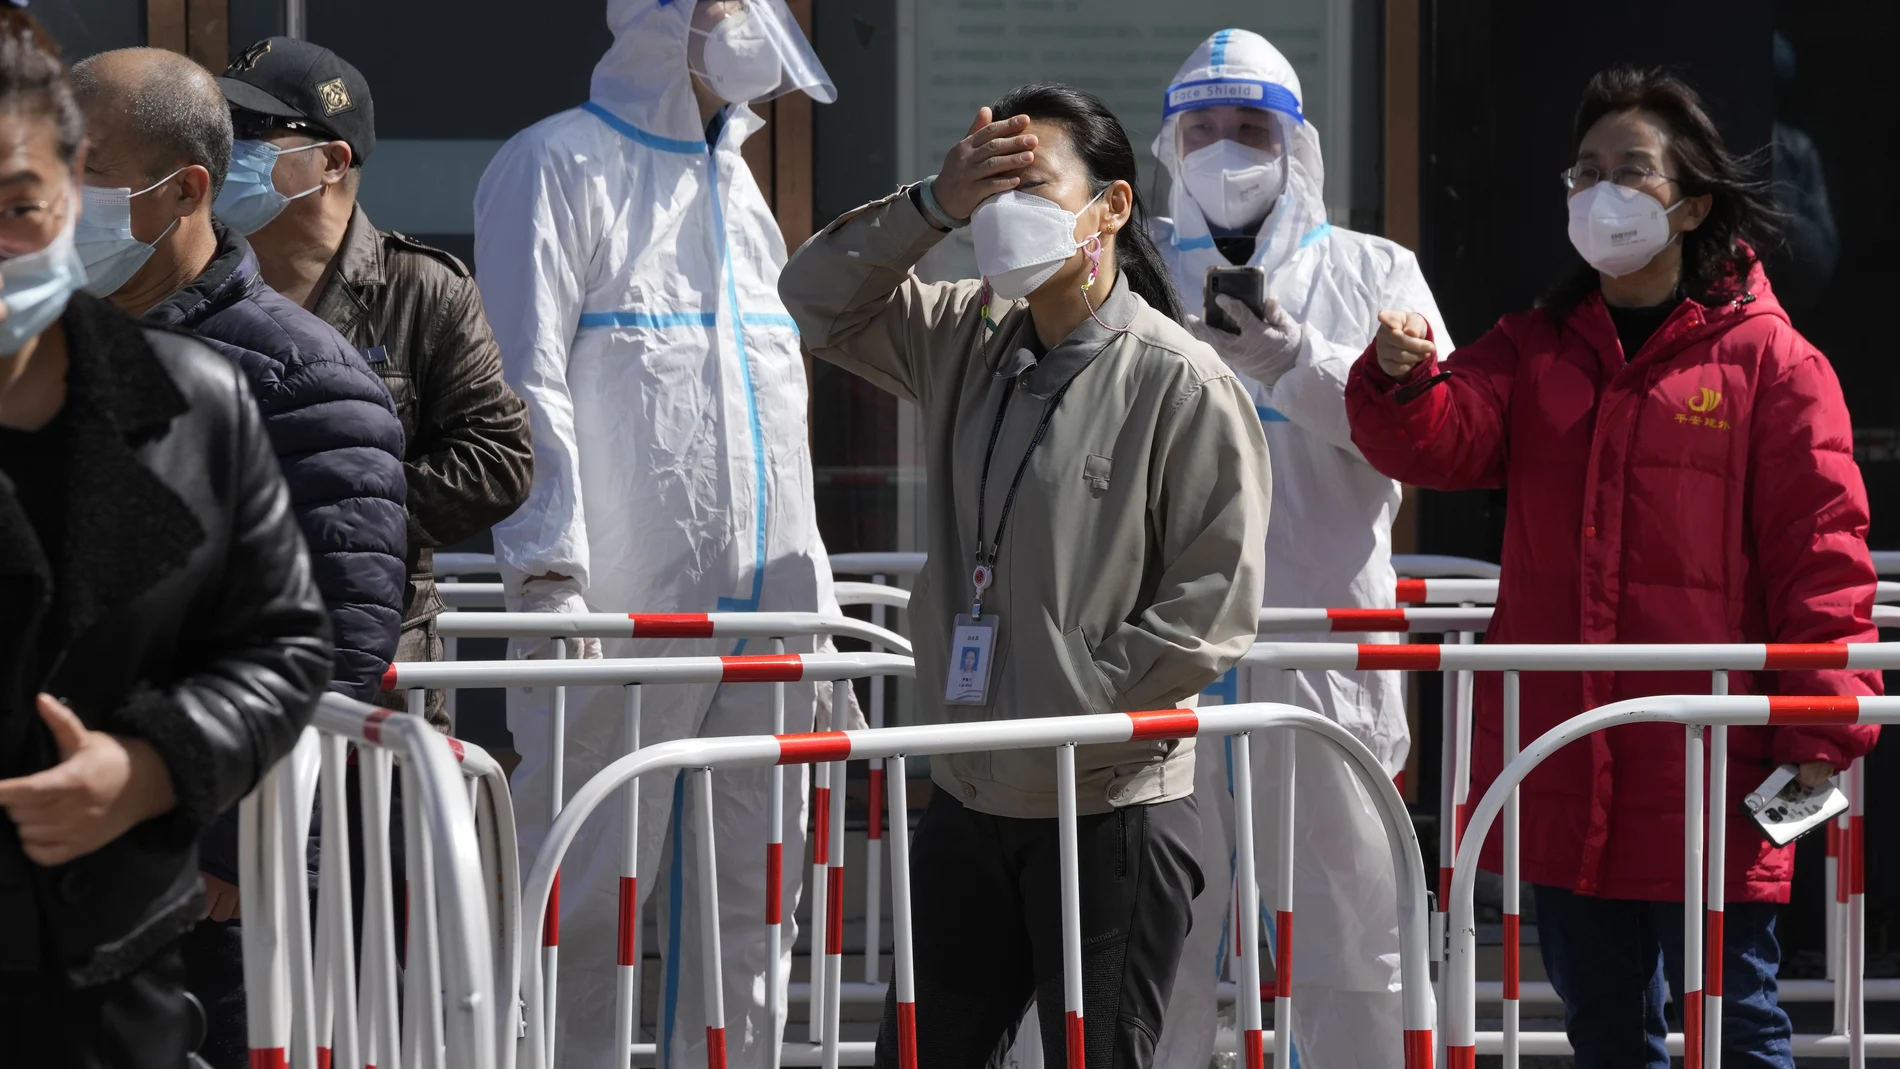 Trabajadores hacen cola para la prueba de Covid fuera de un edificio de oficinas hoy lunes 14 de marzo de 2022 en Beijing